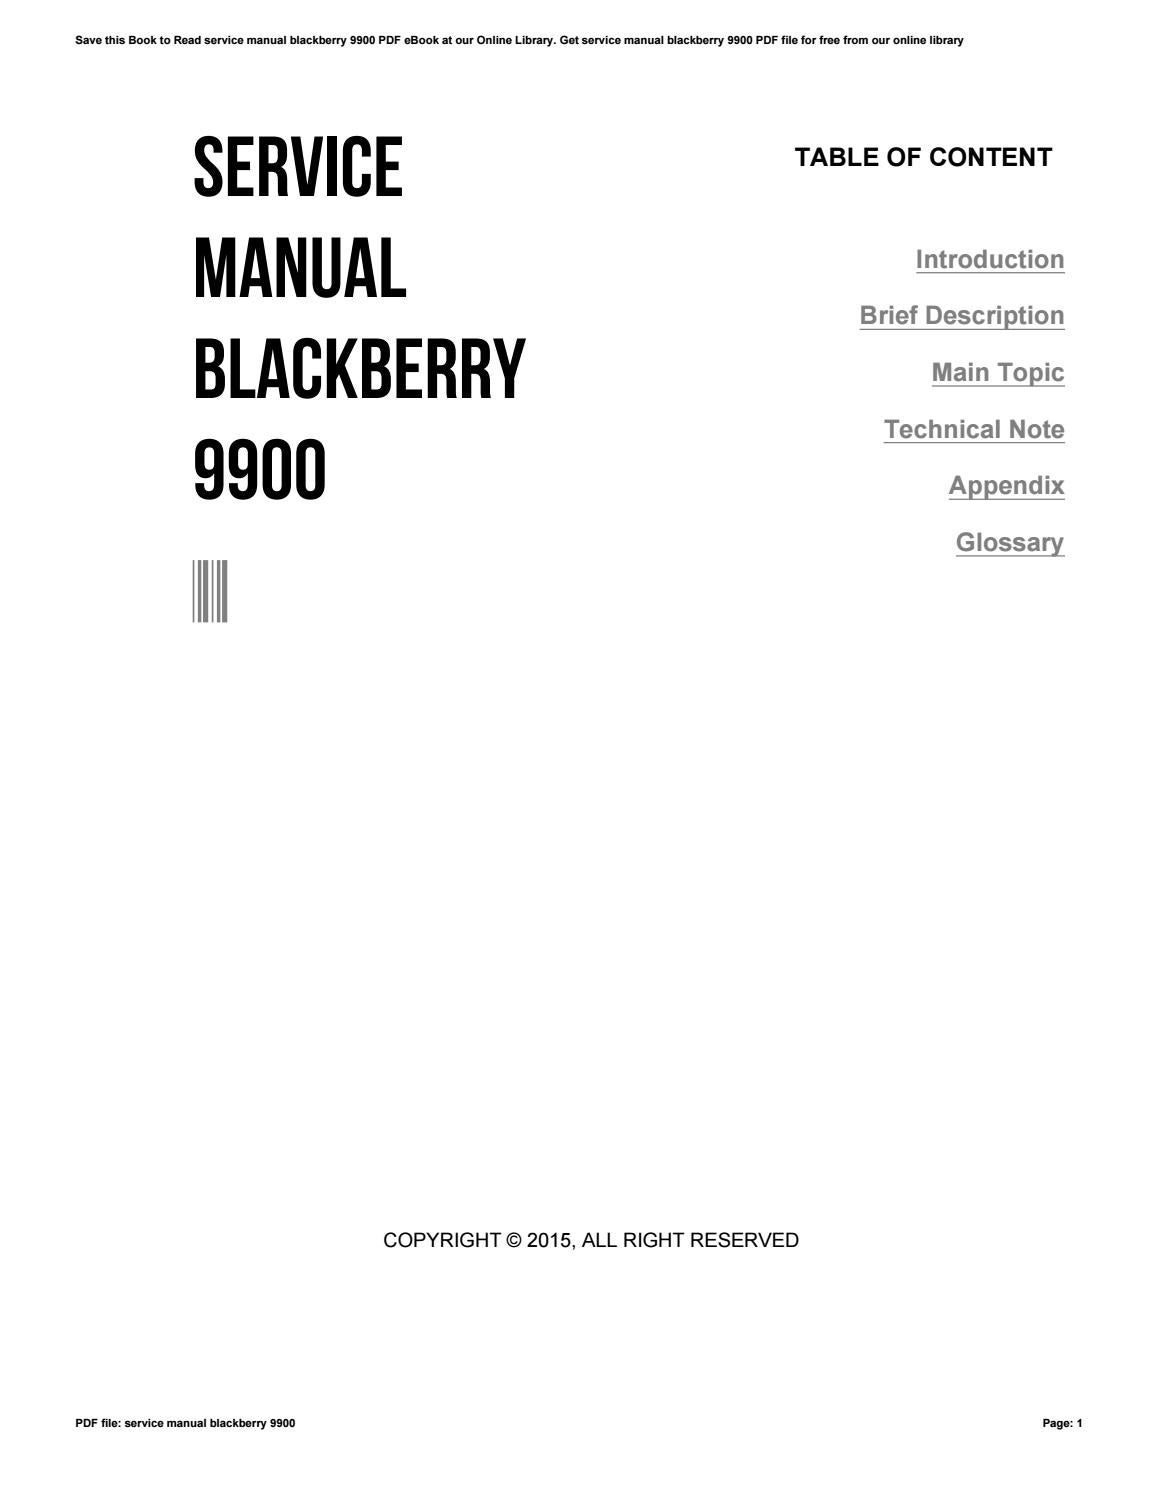 информация о заказе услуги не найдена для BlackBerry 9900